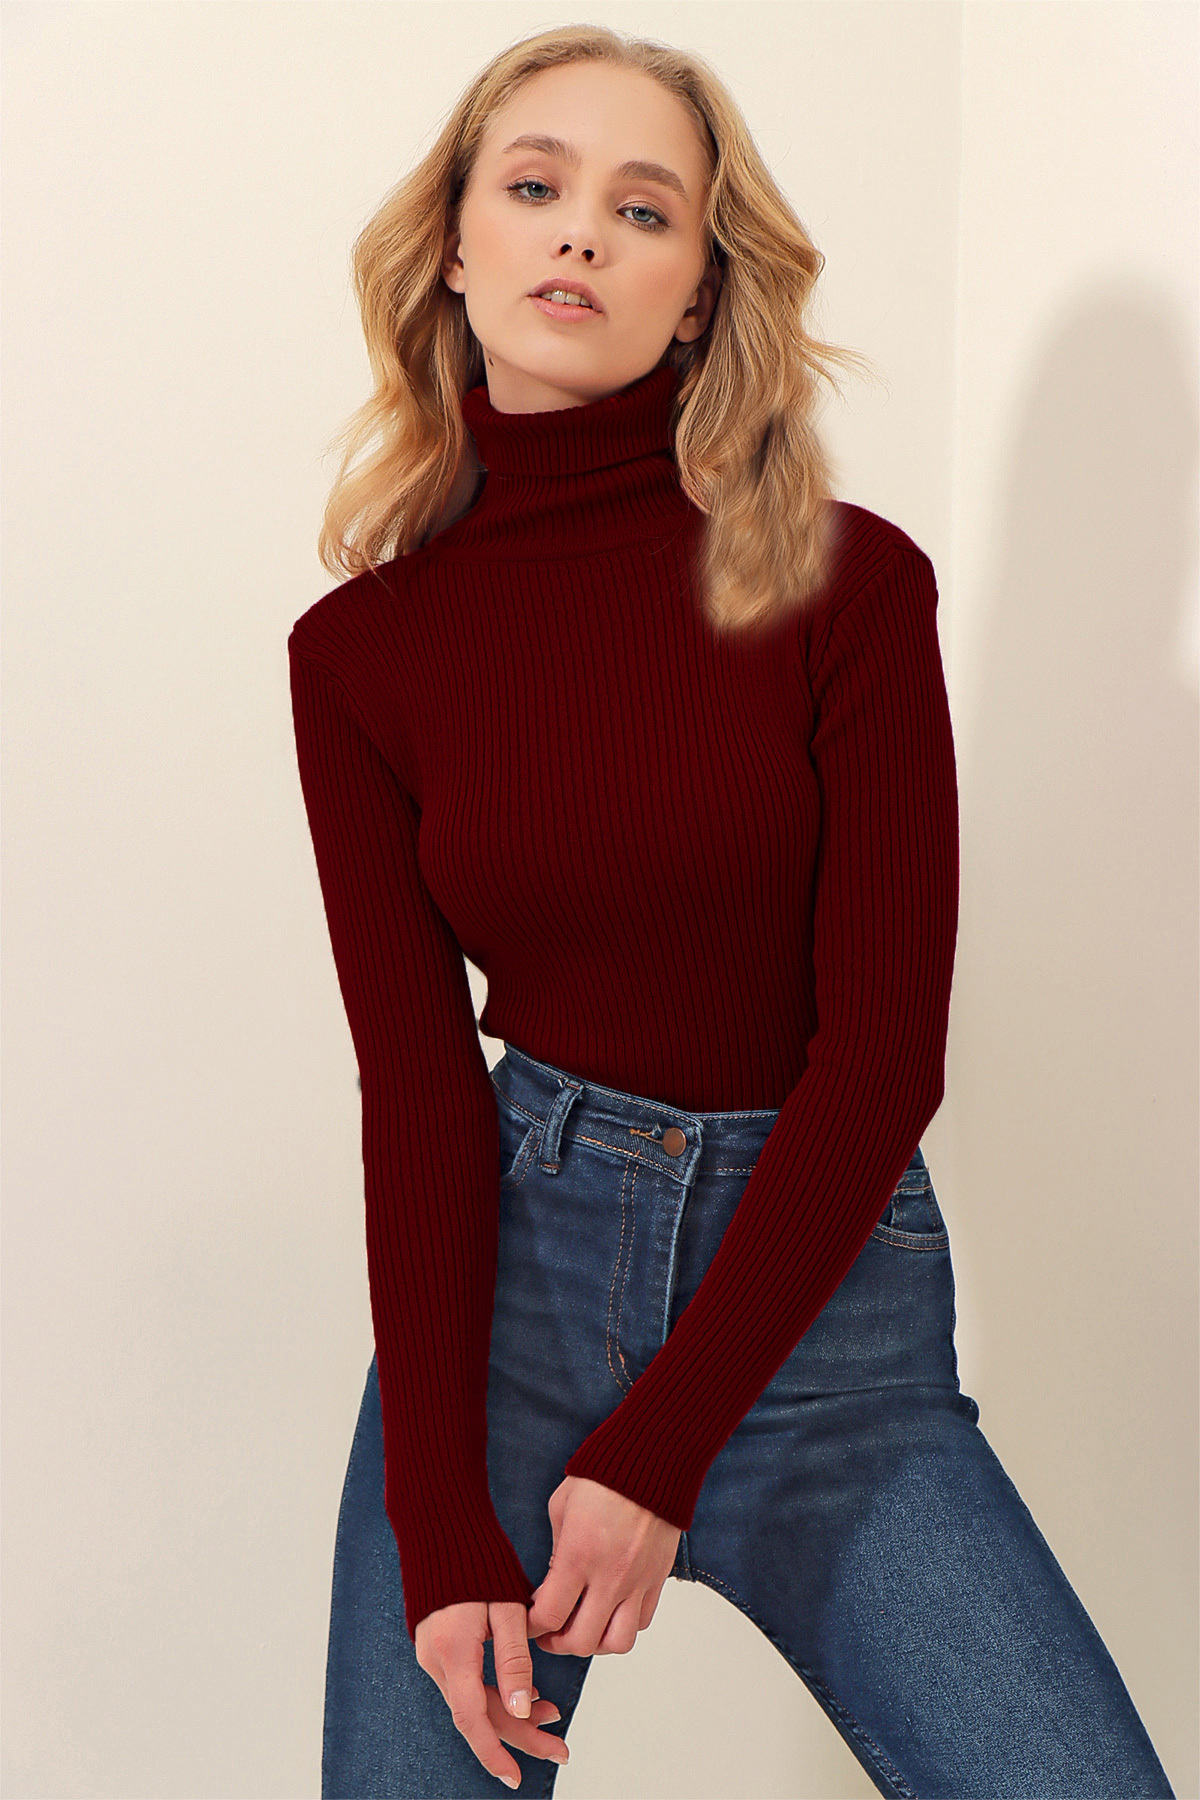 Trend Alaçatı Stili Women's Cinnamon Turtleneck Corduroy Knitwear Sweater